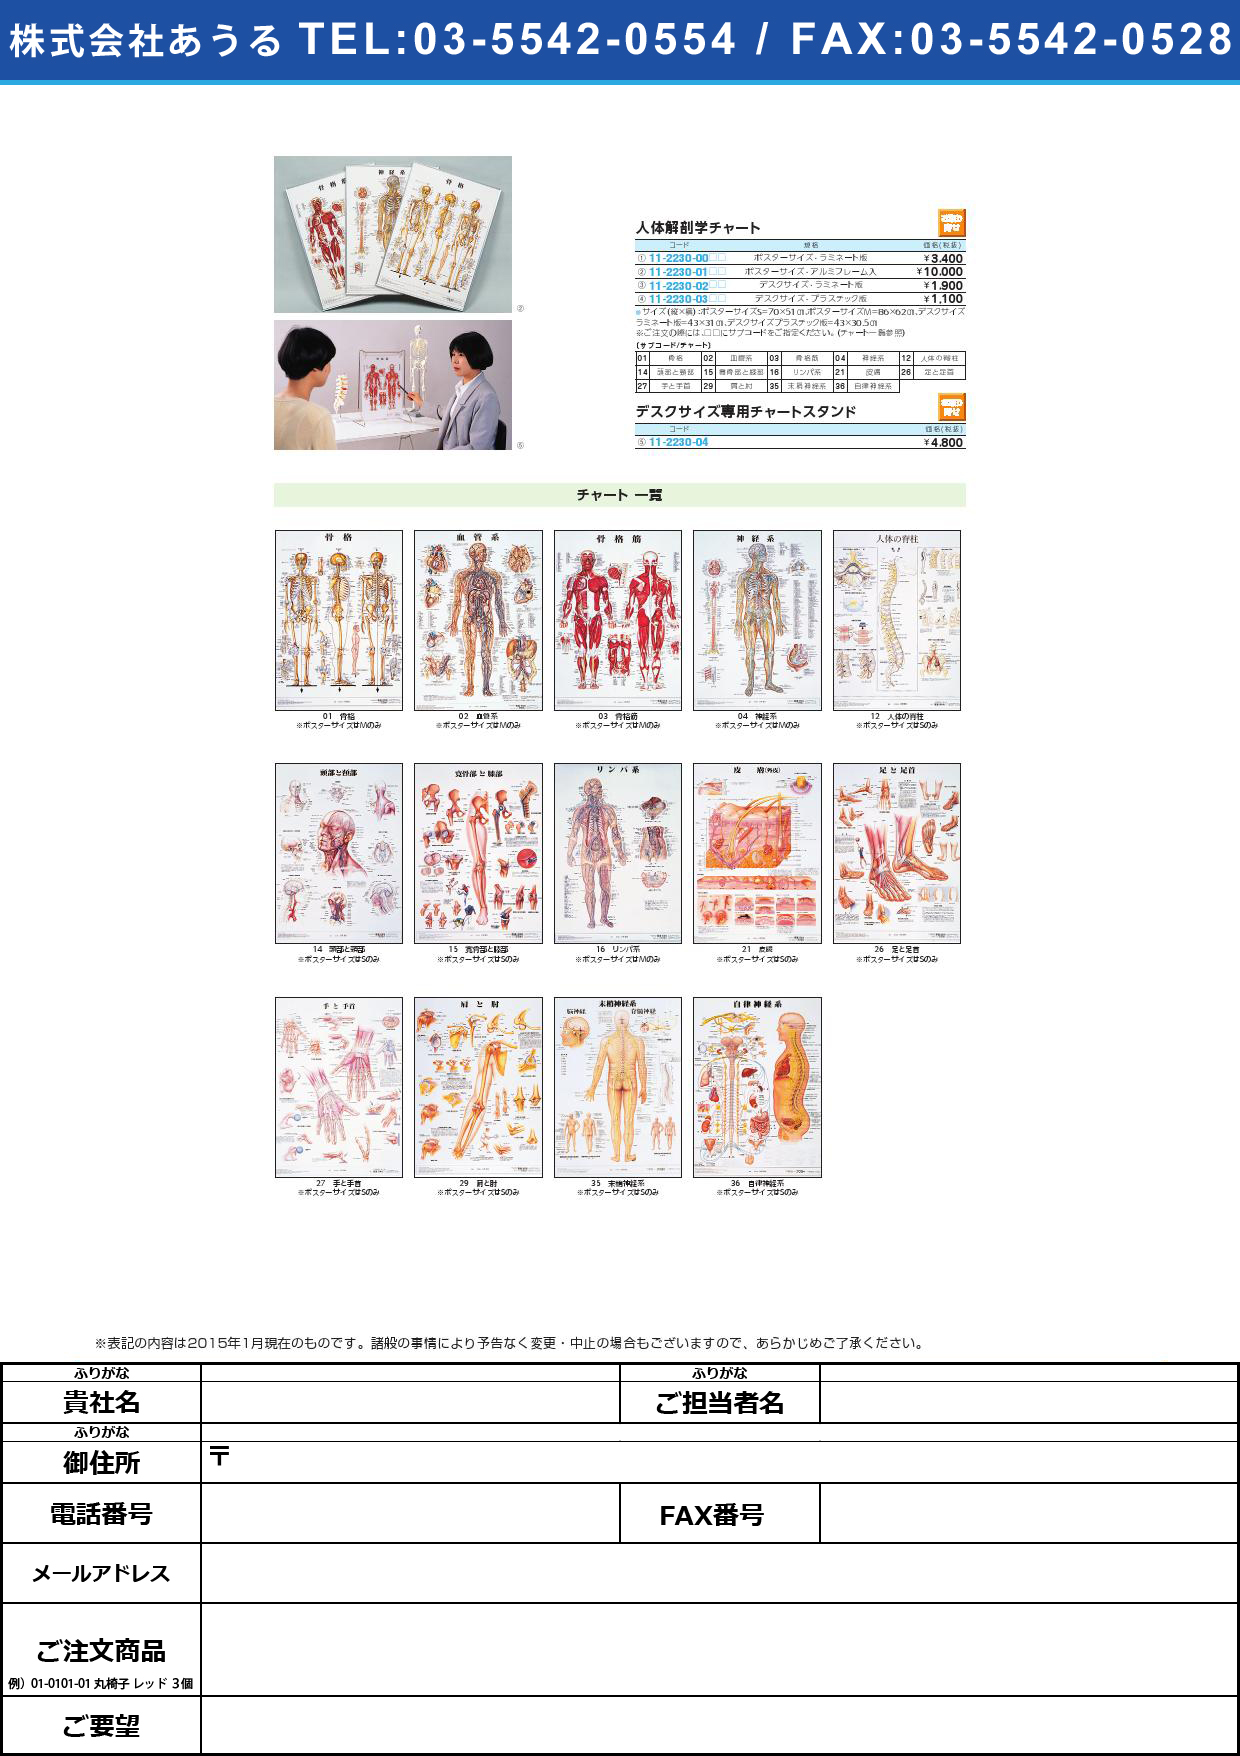 【お取り寄せ】人体解剖学チャート専用スタンド ｼﾞﾝﾀｲｶｲﾎﾞｳｶﾞｸﾁｬｰﾄ IMC-52(ﾃﾞｽｸｻｲｽﾞﾖｳ)【1台単位】(11-2230-04)